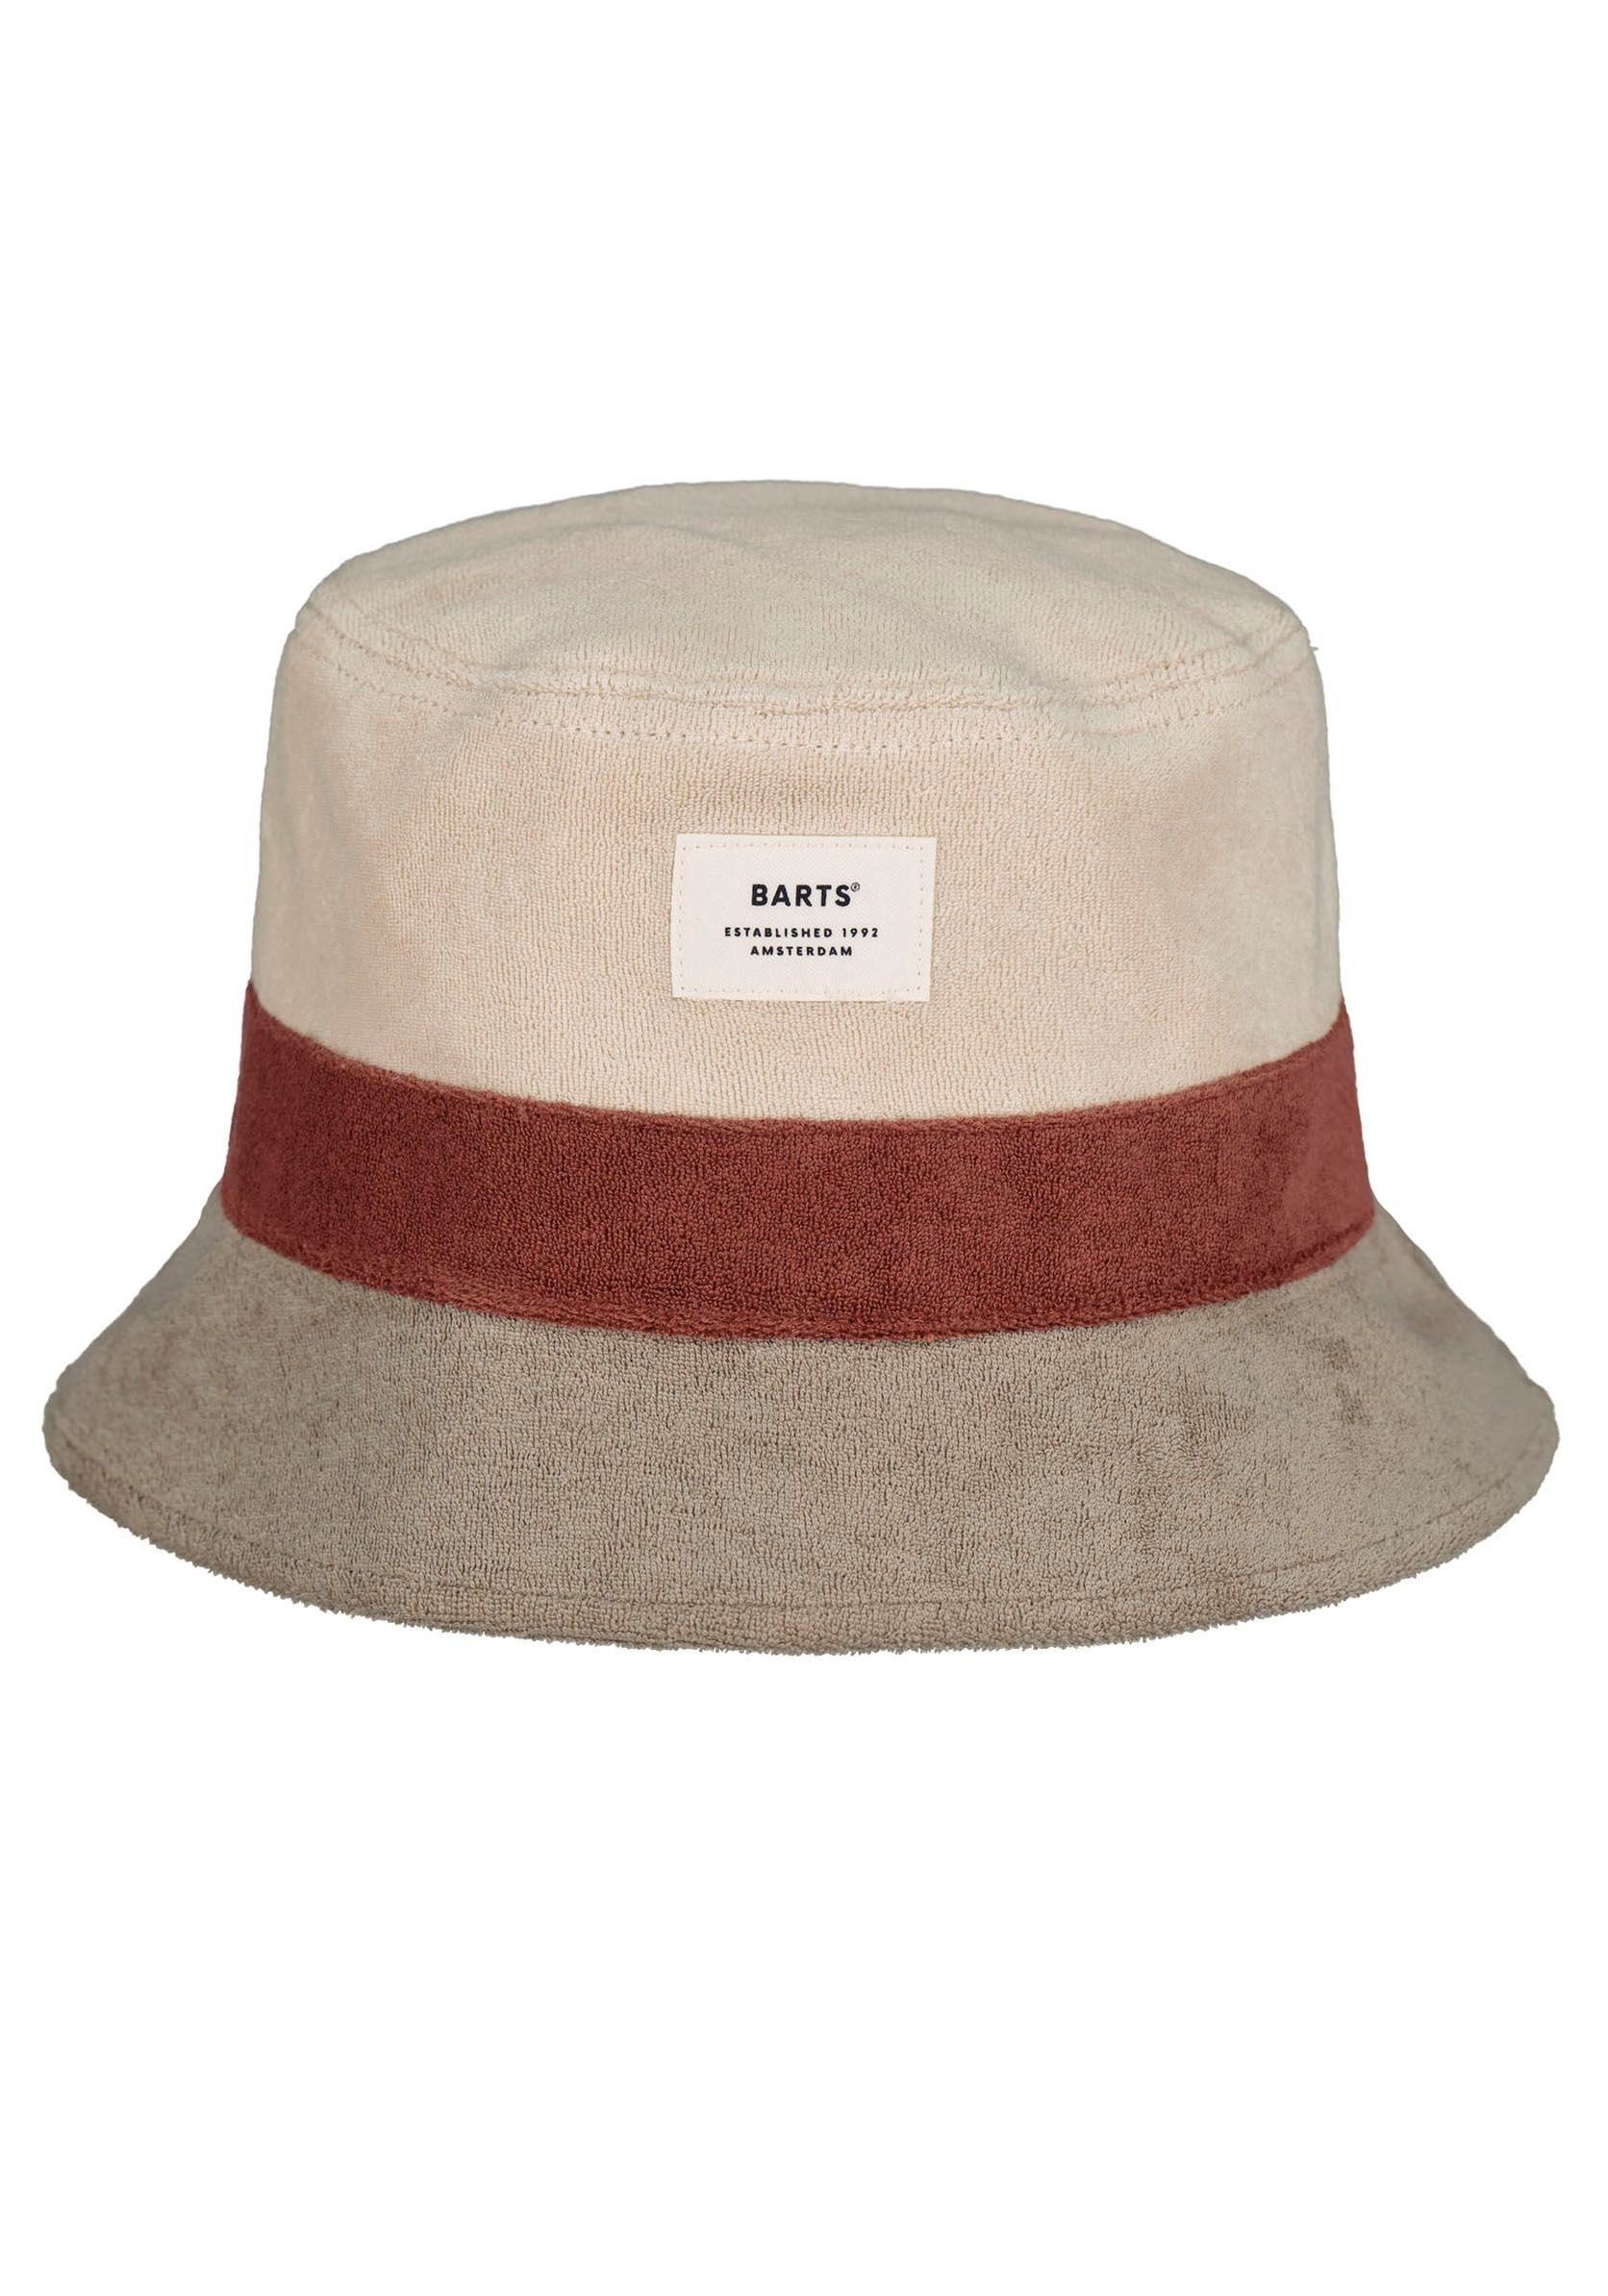 Barts Fischerhut beige-rost-braun Gladiola Hat